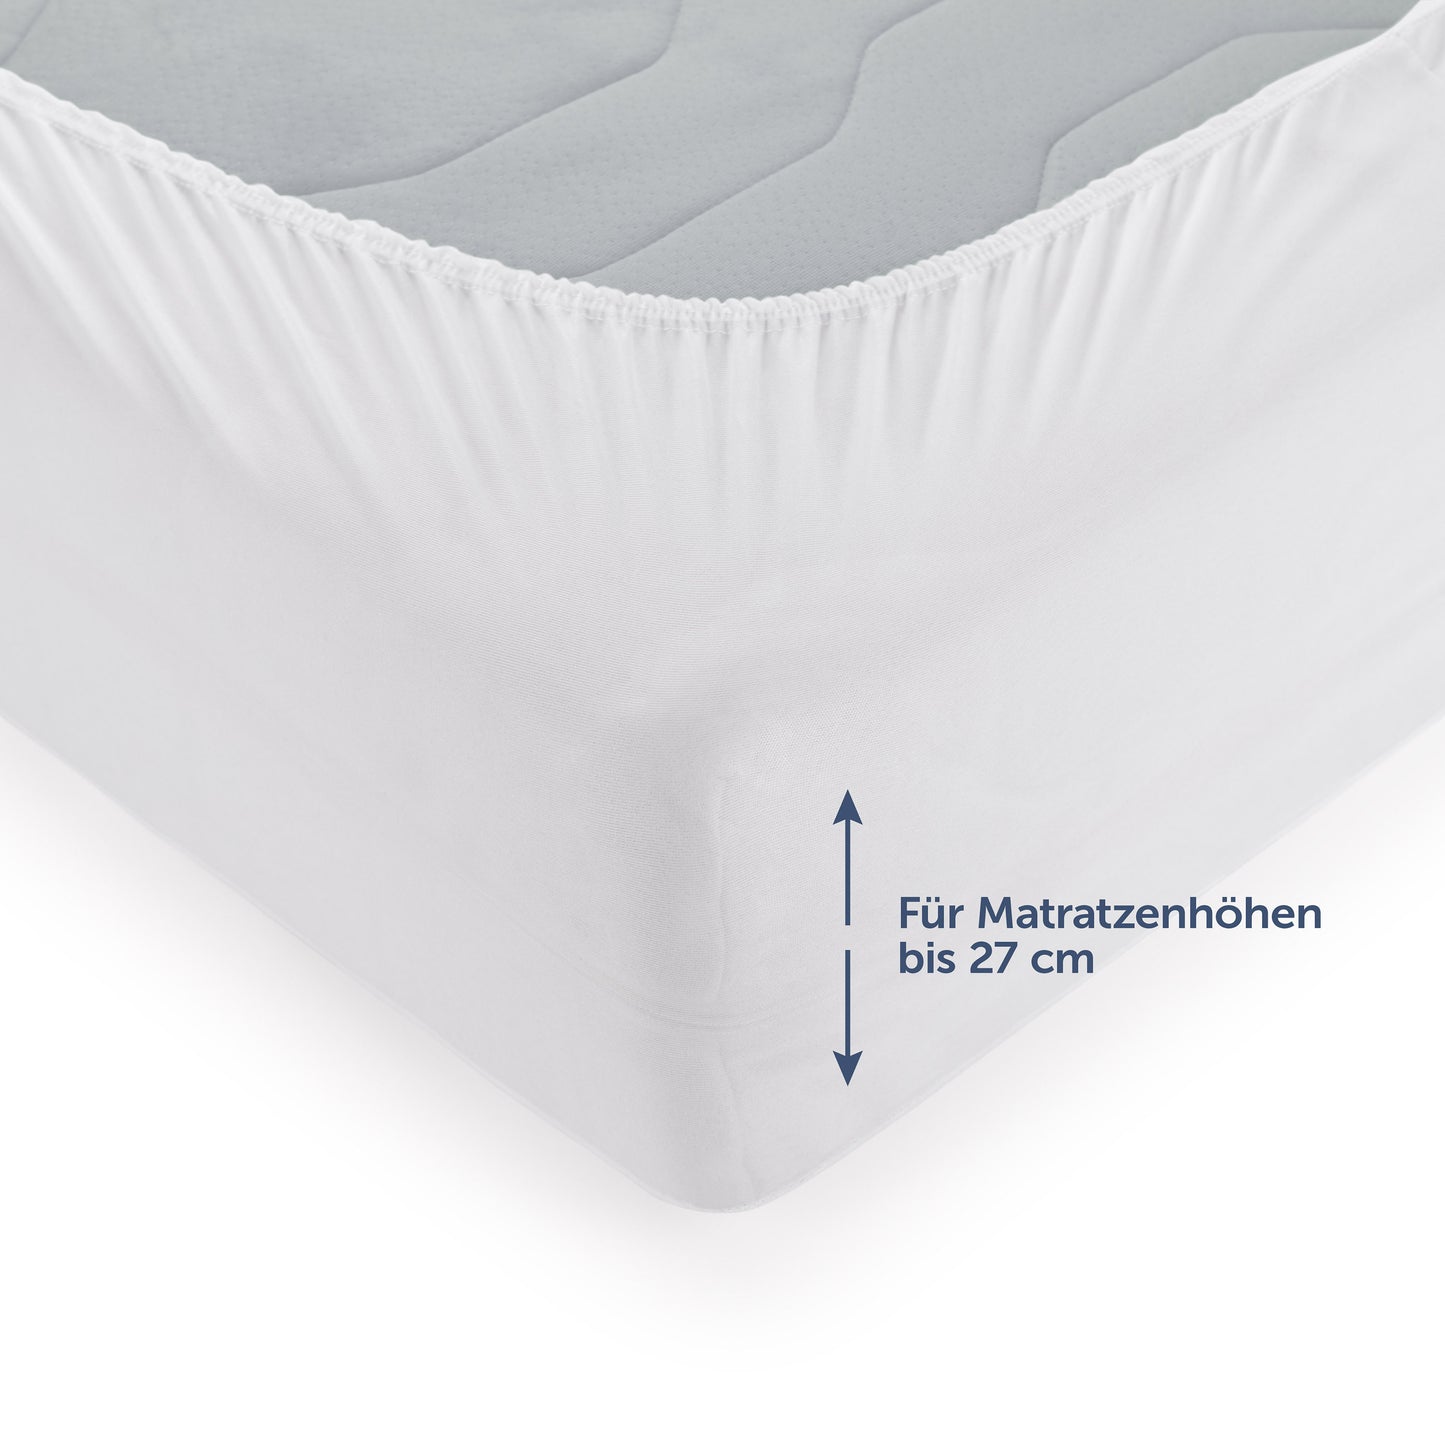 Nahaufnahme des Matratzenschoners auf einer Matratze mit Hinweis 'Für Matratzenhöhen bis 27 cm'.